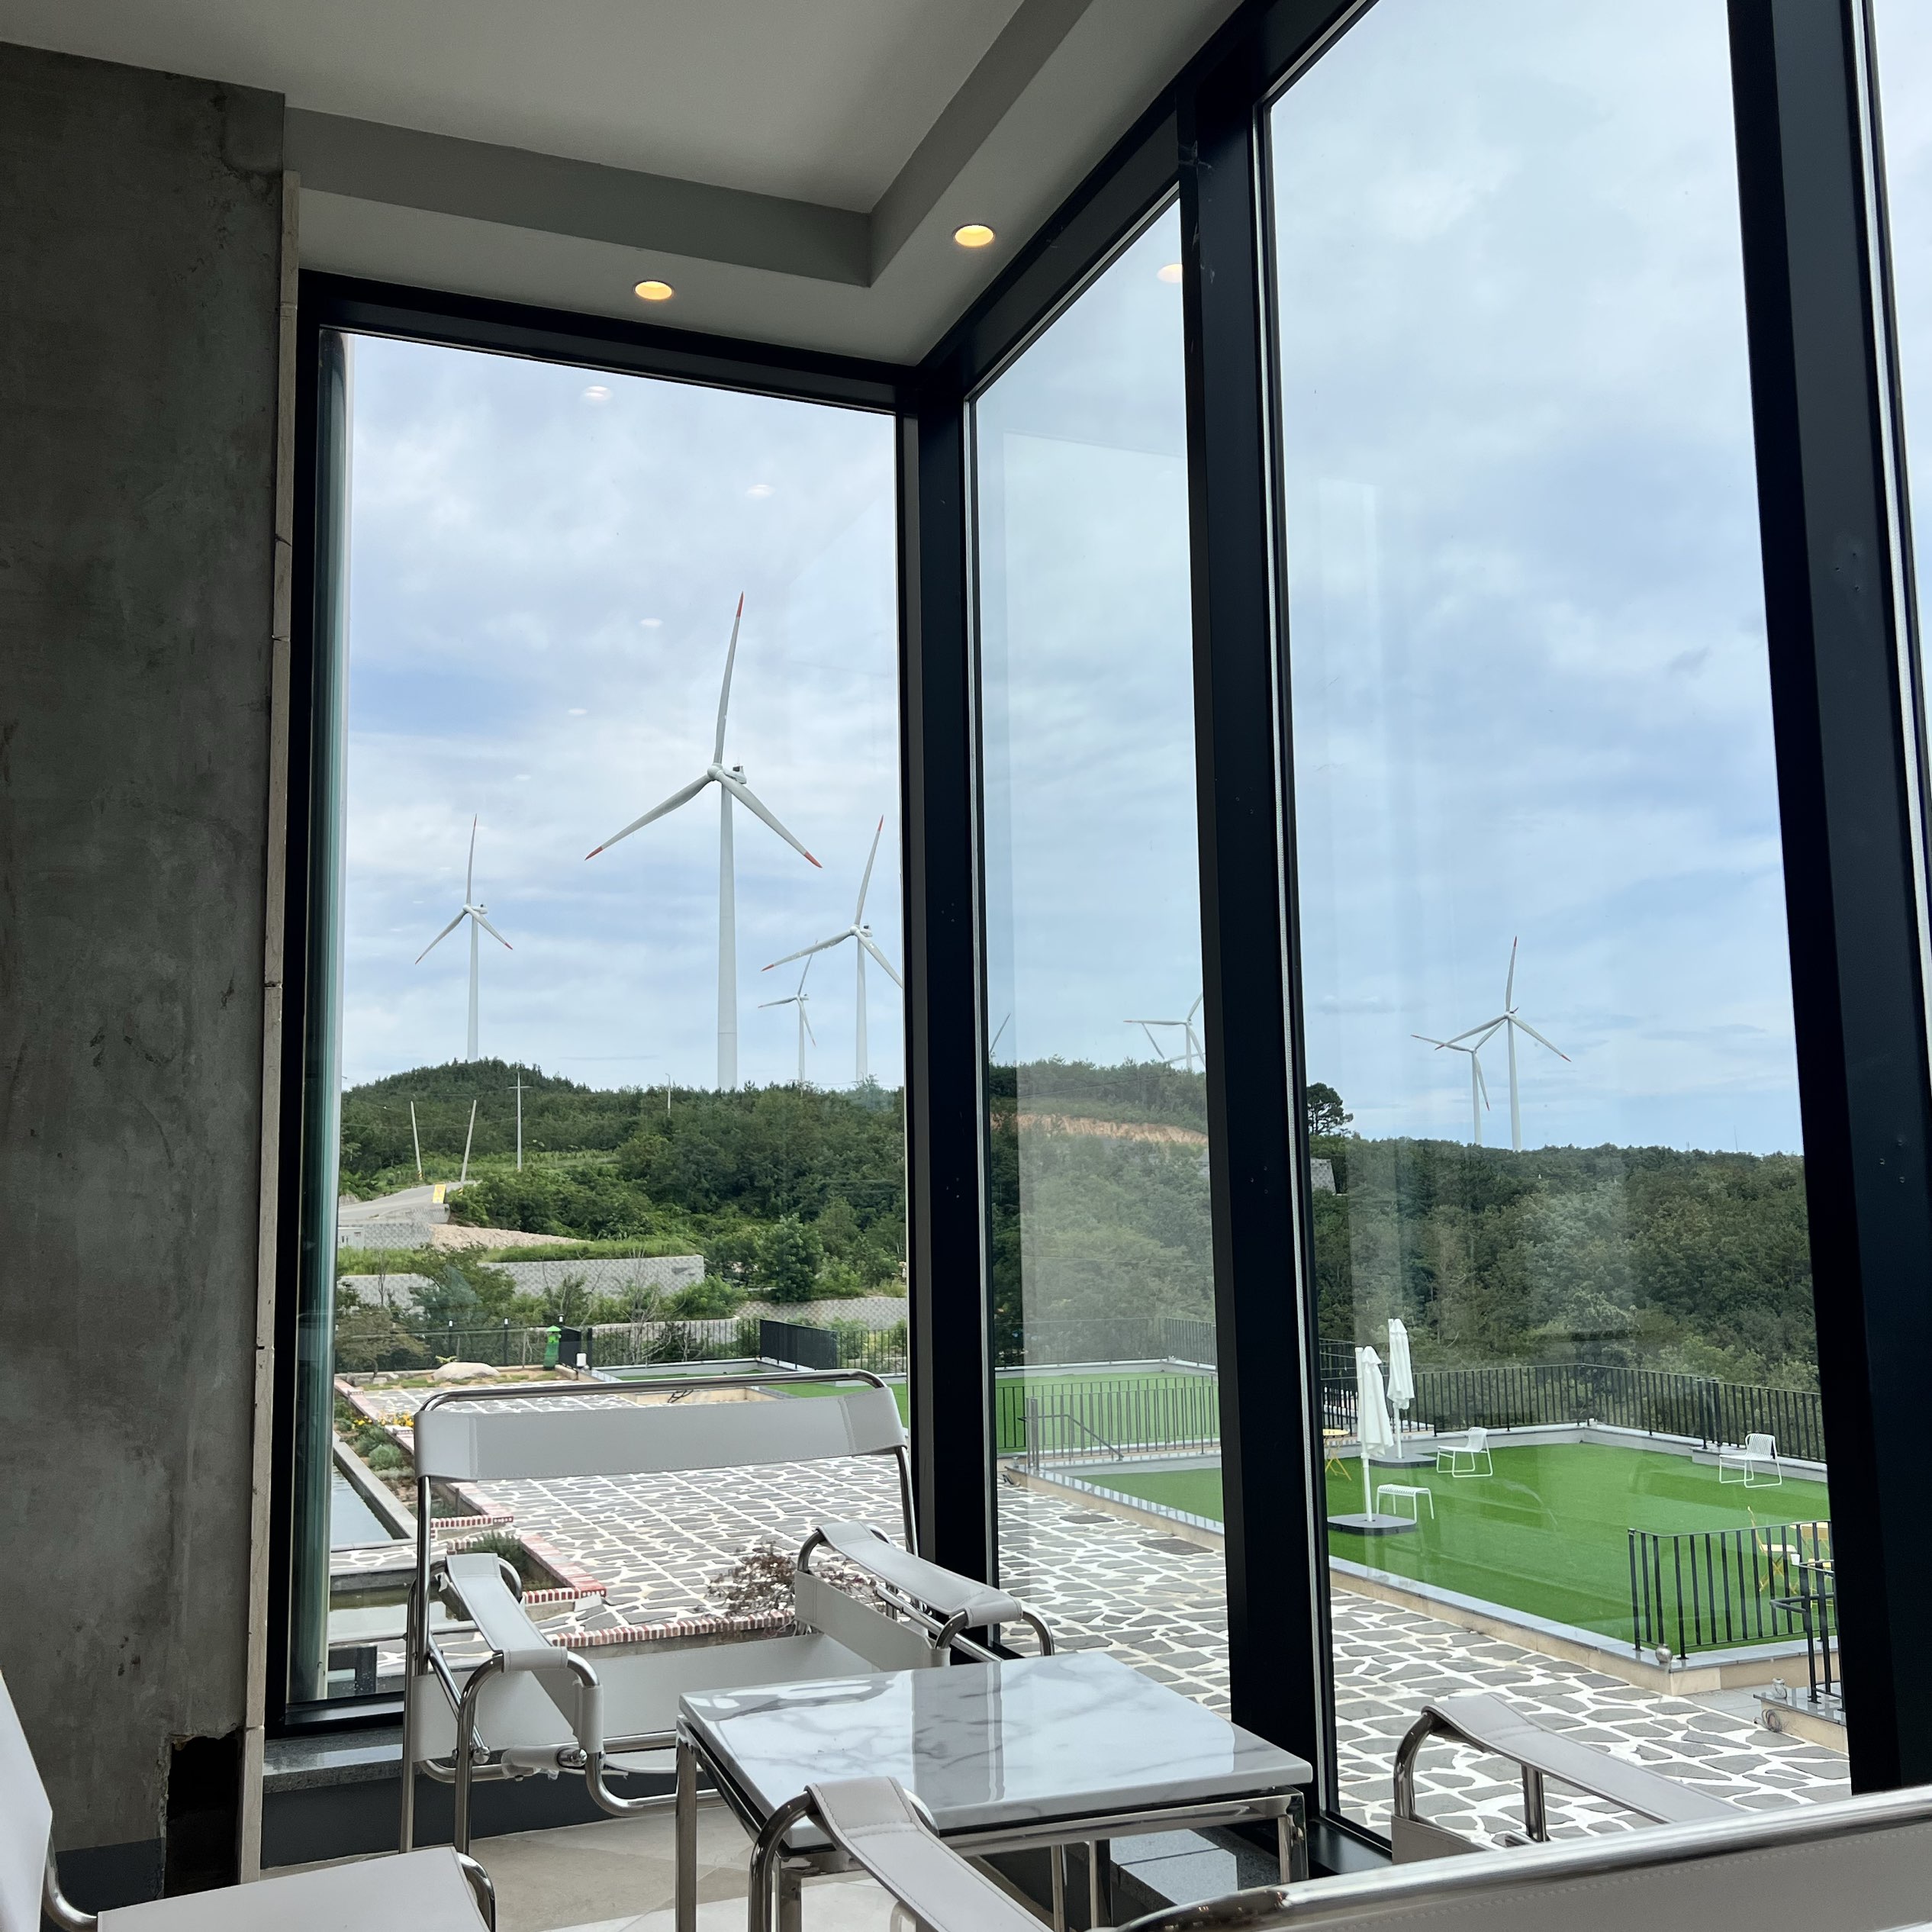 英德风力发电机风景咖啡厅-利夫福斯特-